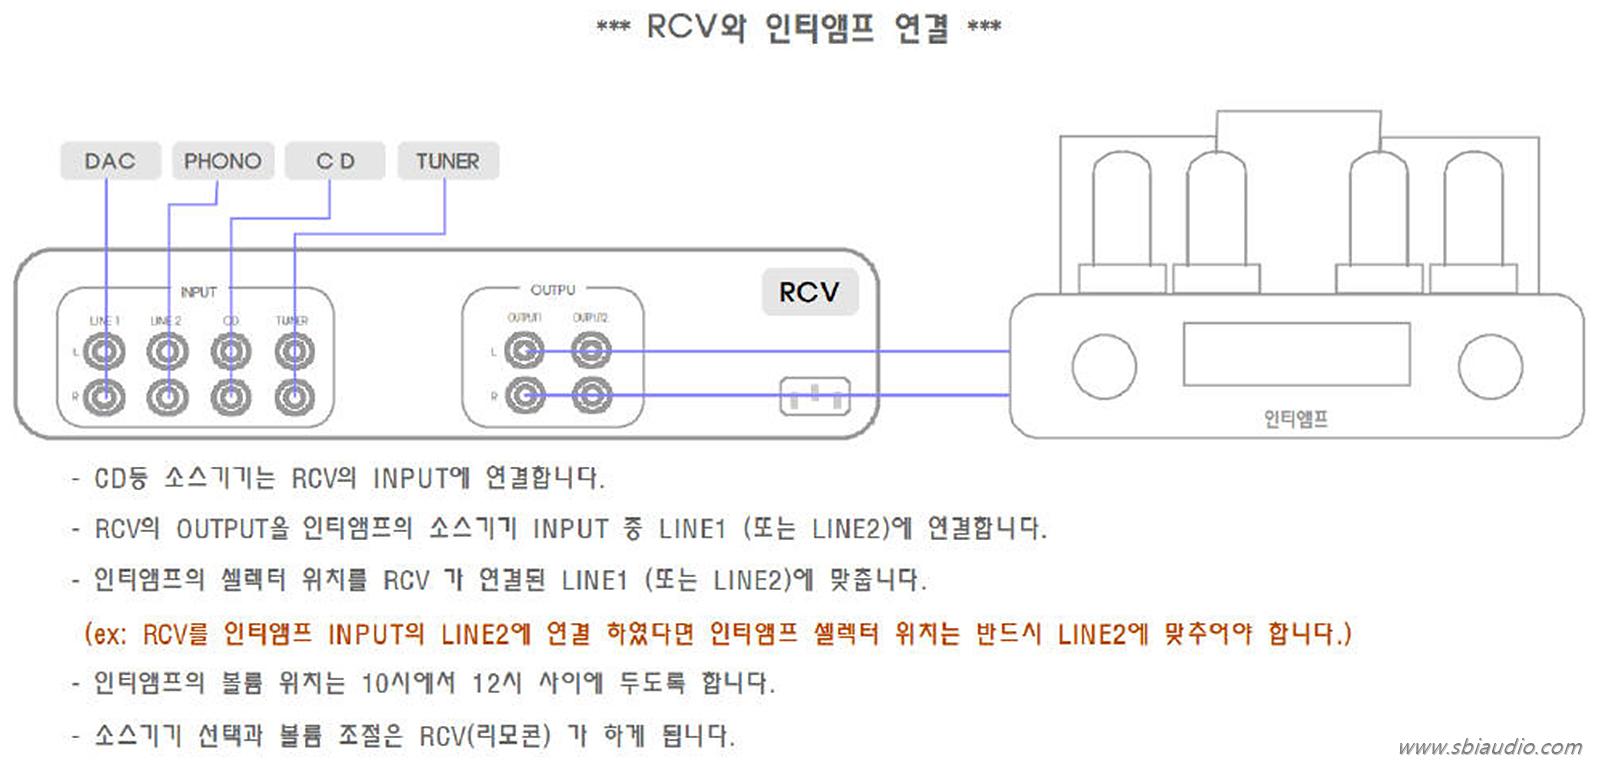 RCV MK2 인티앰프 연결도.jpg